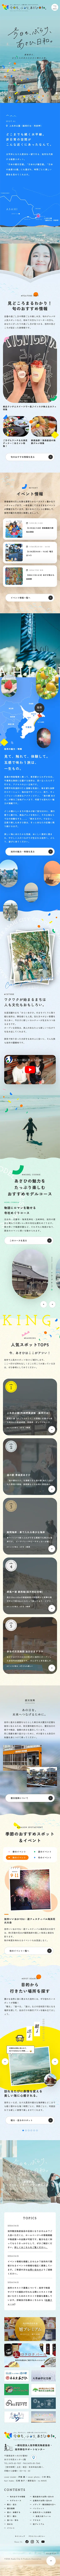 千葉県旭市観光サイト｜今日も、ぶらり、あさひ日和。のモバイルサイズの画像